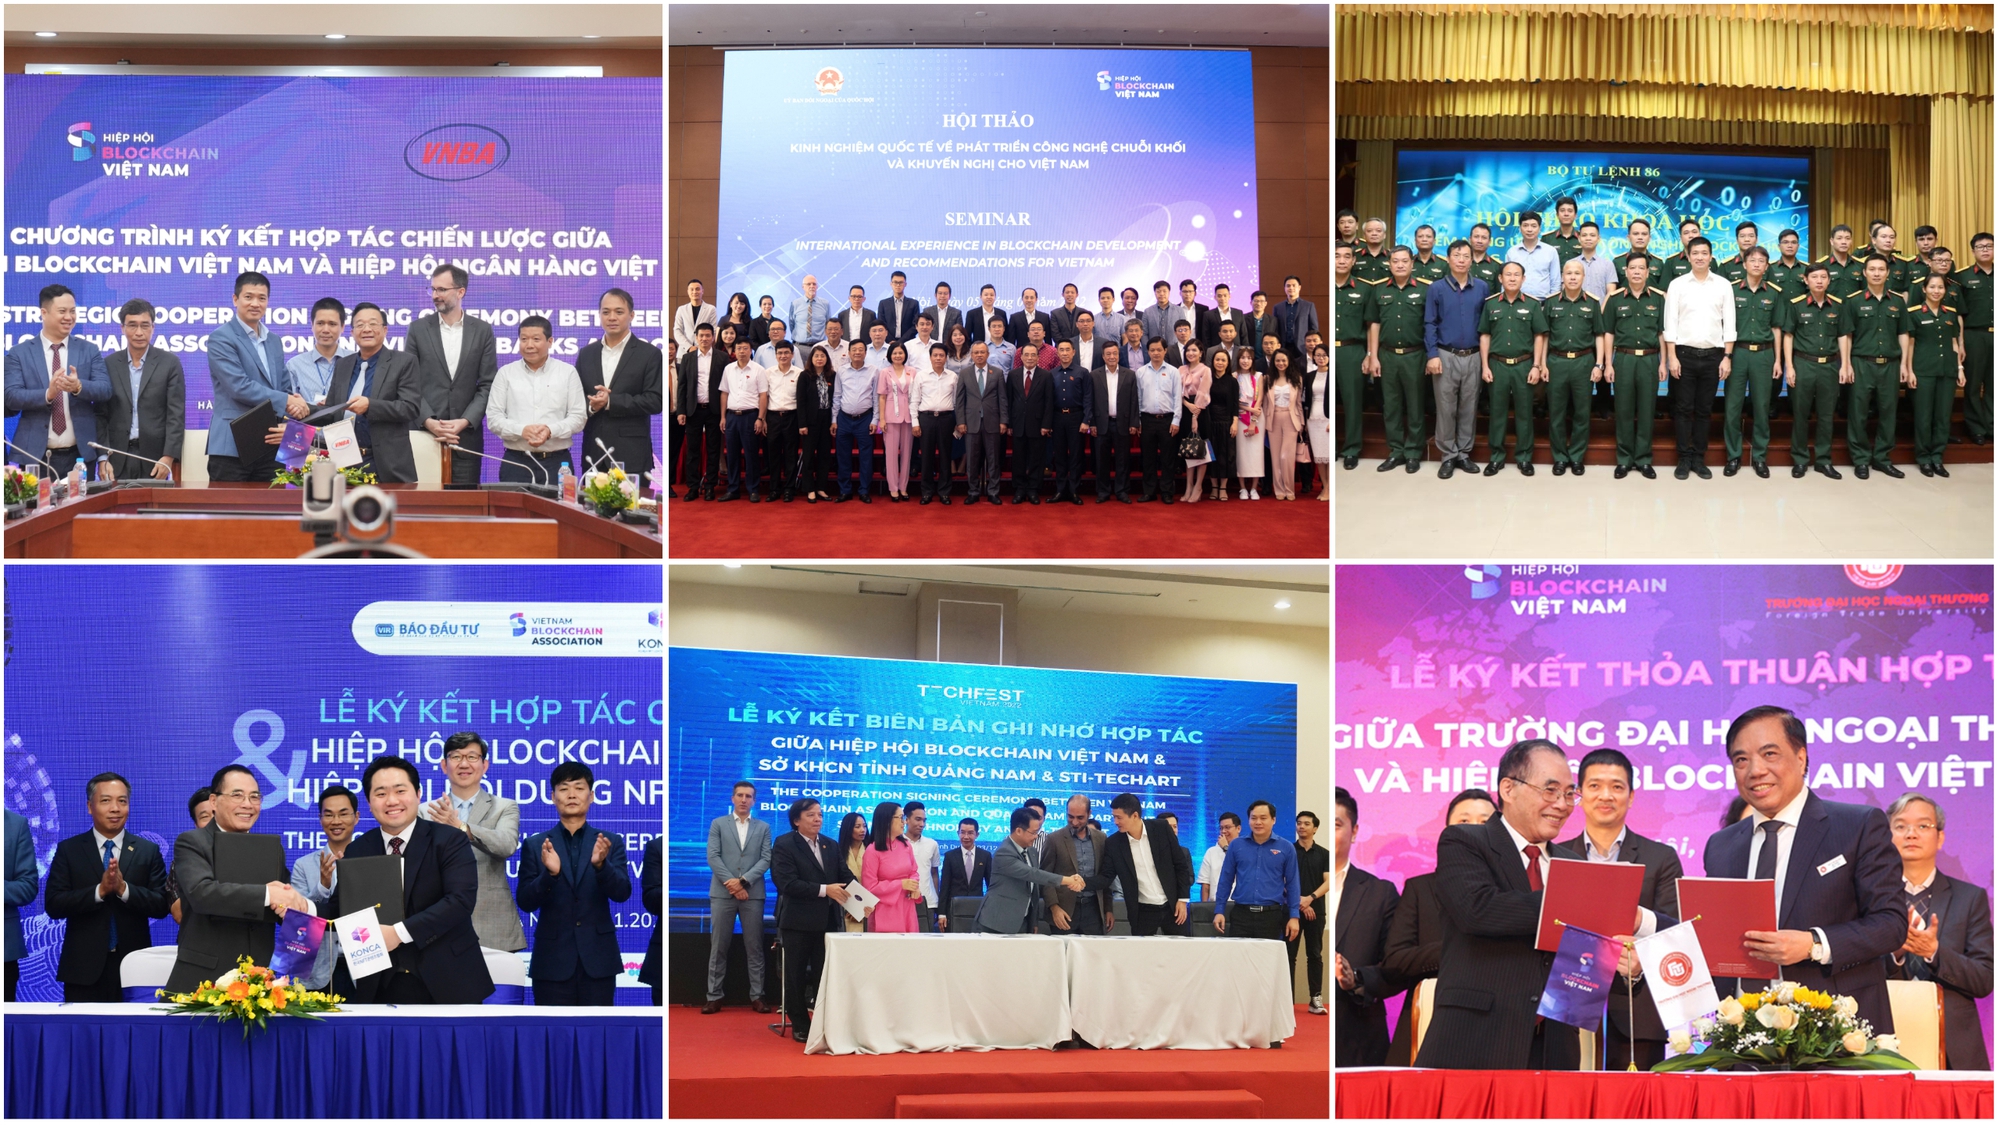 Hiệp hội Blockchain Việt Nam là một trong những điểm nhấn khoa học công nghệ 2022 - Ảnh 2.